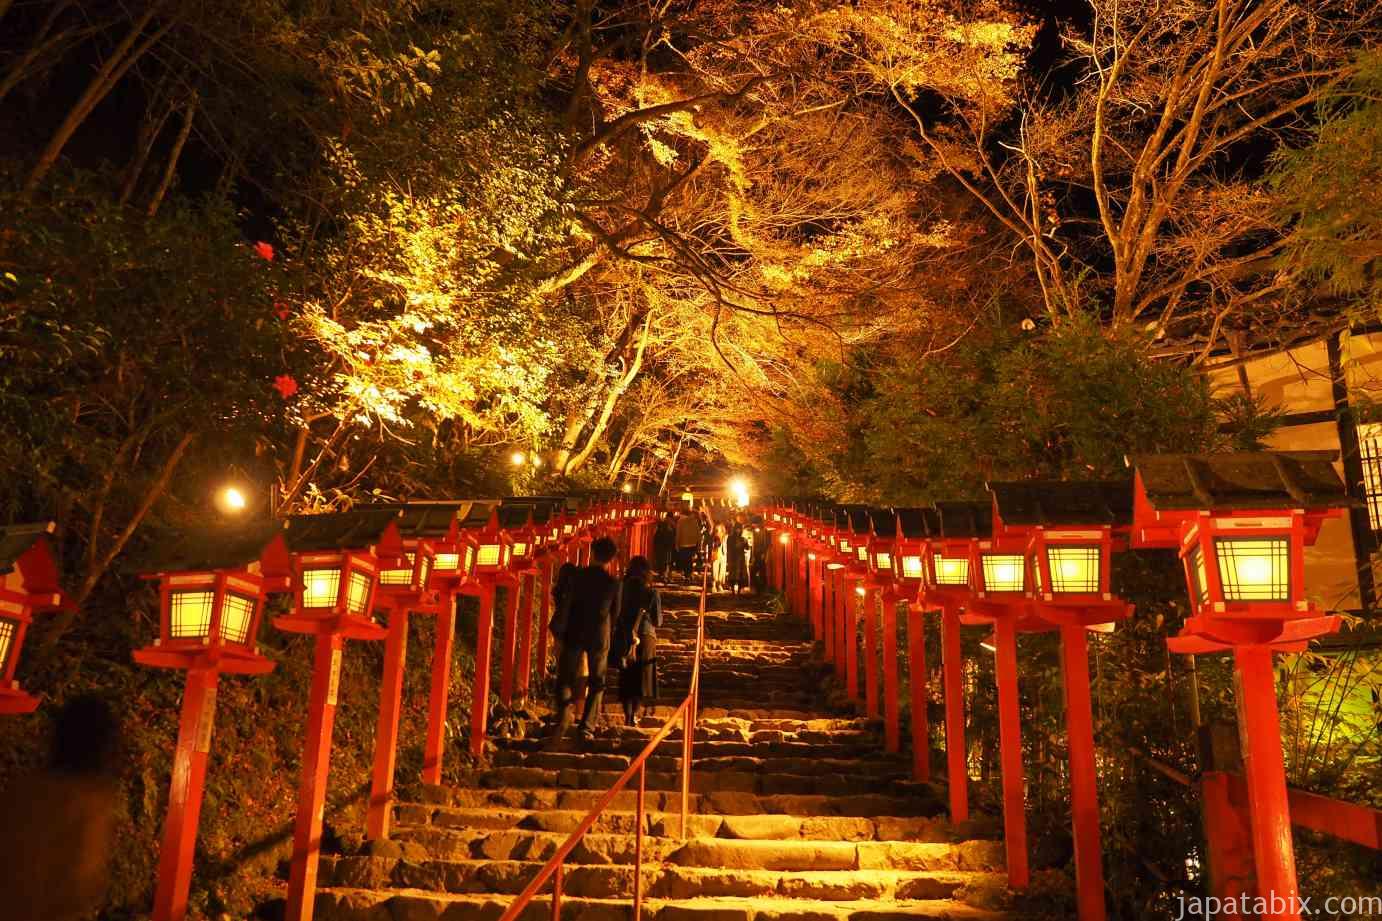 京都 貴船神社の紅葉21年版 貴船もみじ灯篭の必見 見どころやアクセス方法 駐車場について解説 じゃぱたびっくす